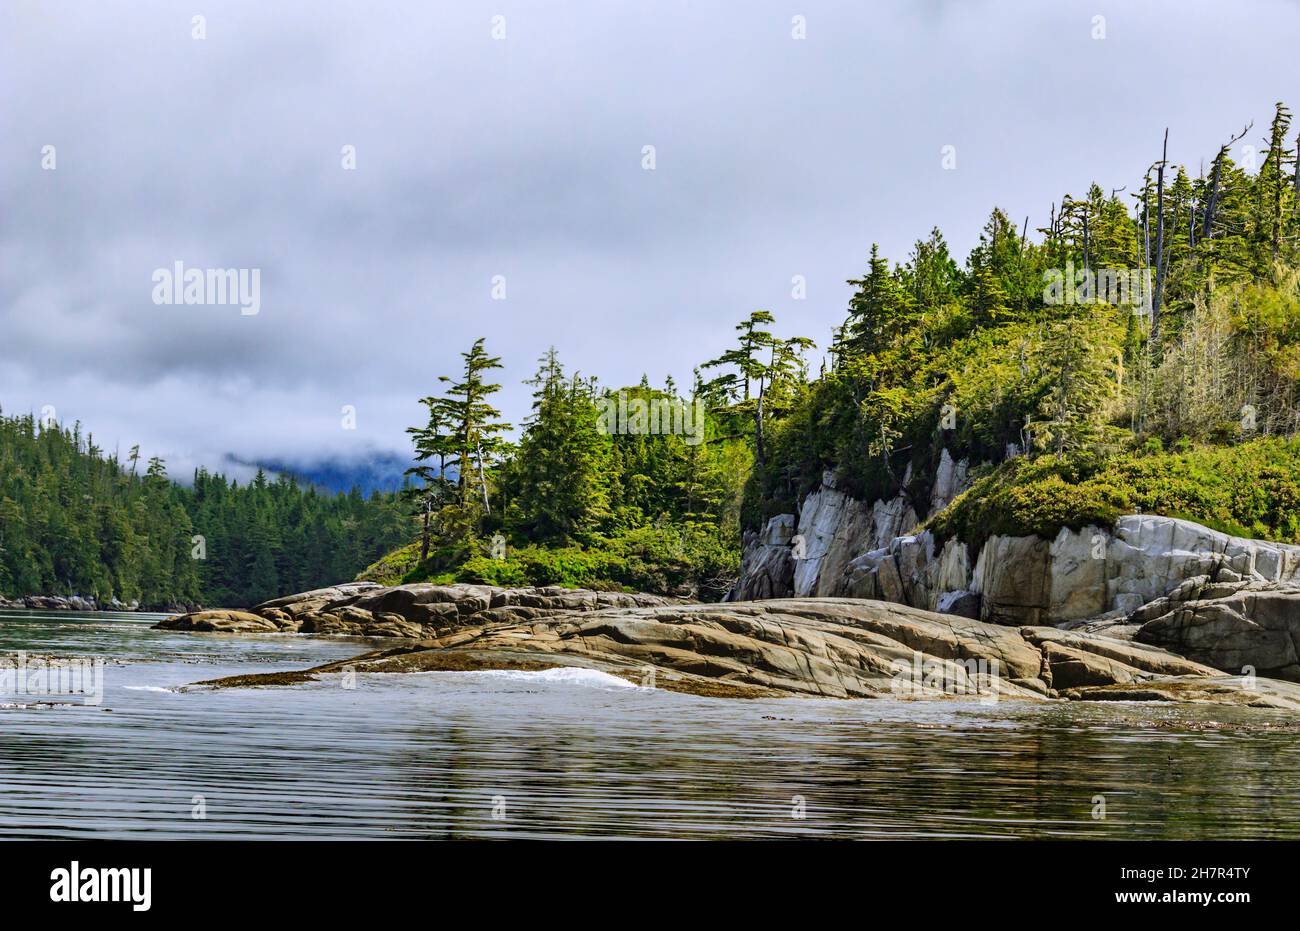 Die Wellen waschen sich sanft auf eine felsige Inselküste am östlichen Rand der Queen Charlotte Strait, im Great Bear Rainforest an der Küste von British Columbia (Juli). Stockfoto